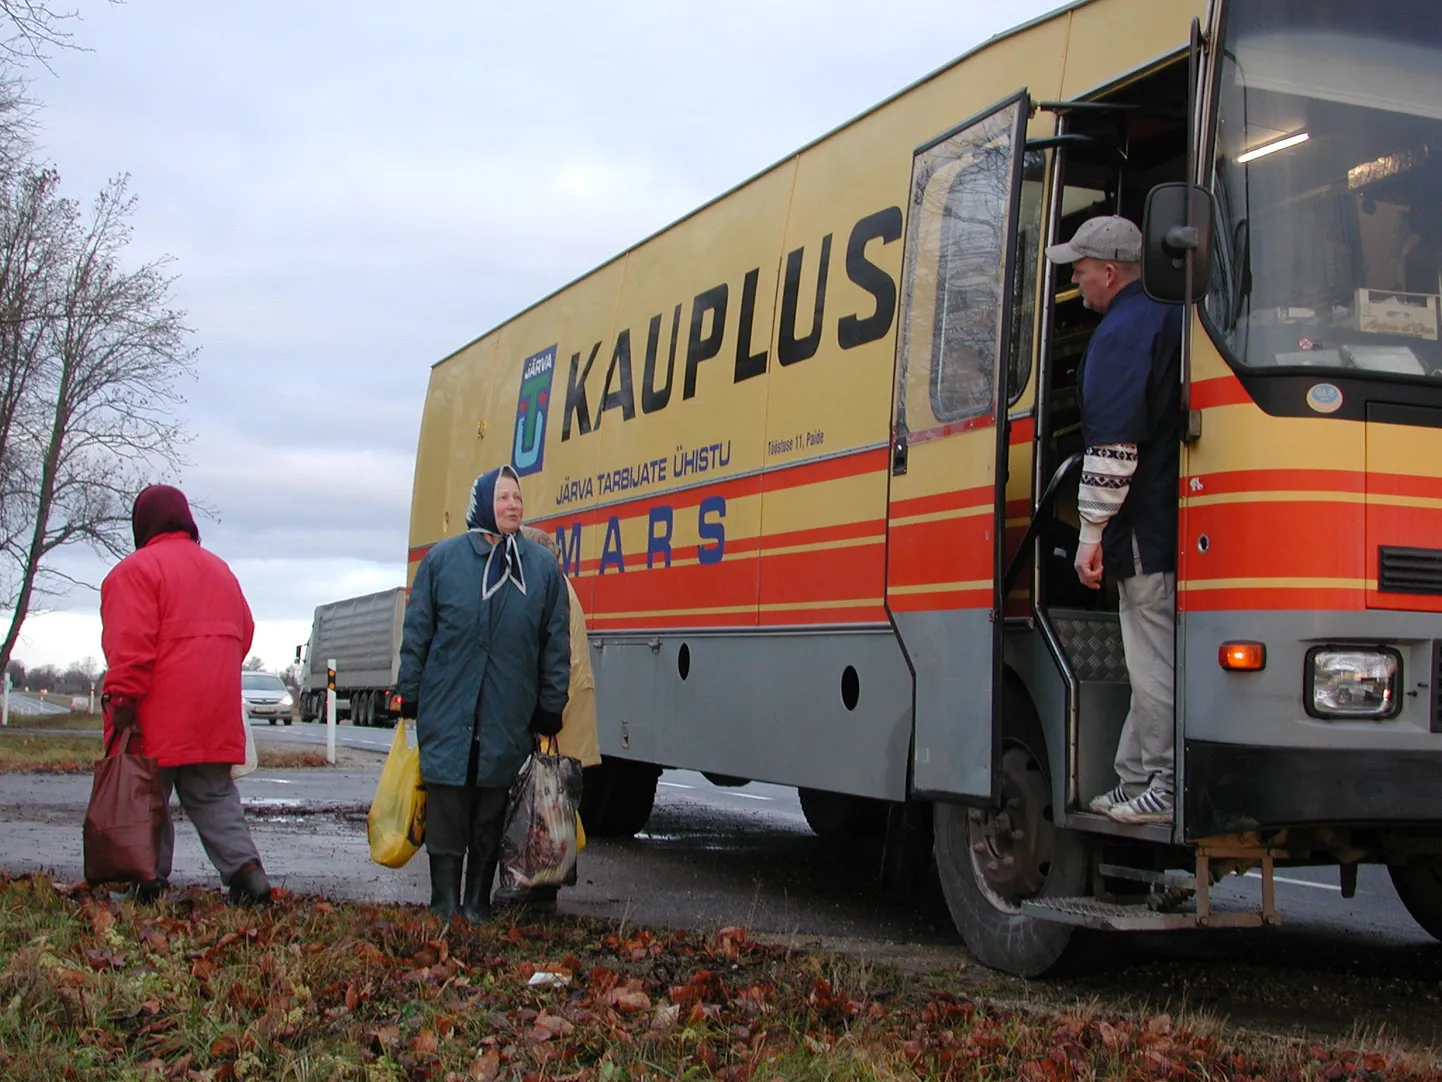 2008 aasta novembris lõpetas Järva tarbijate ühistu kauplusauto maainimeste teenindamise.